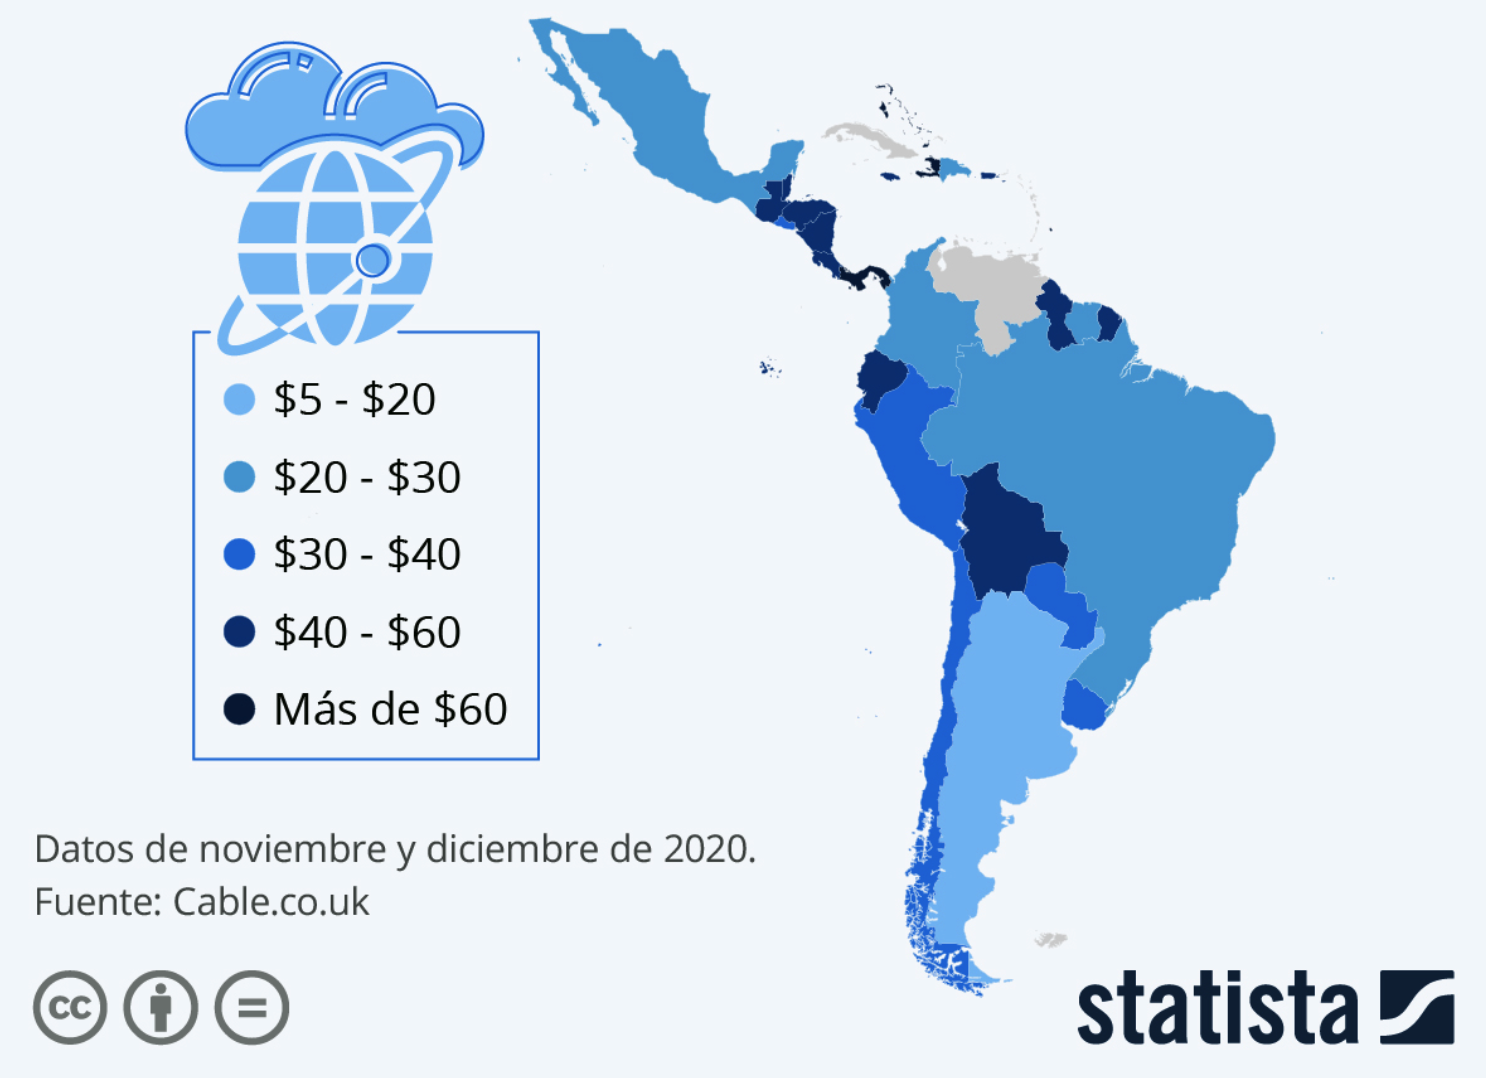 Costo de internet en america del sur, latinoamerica